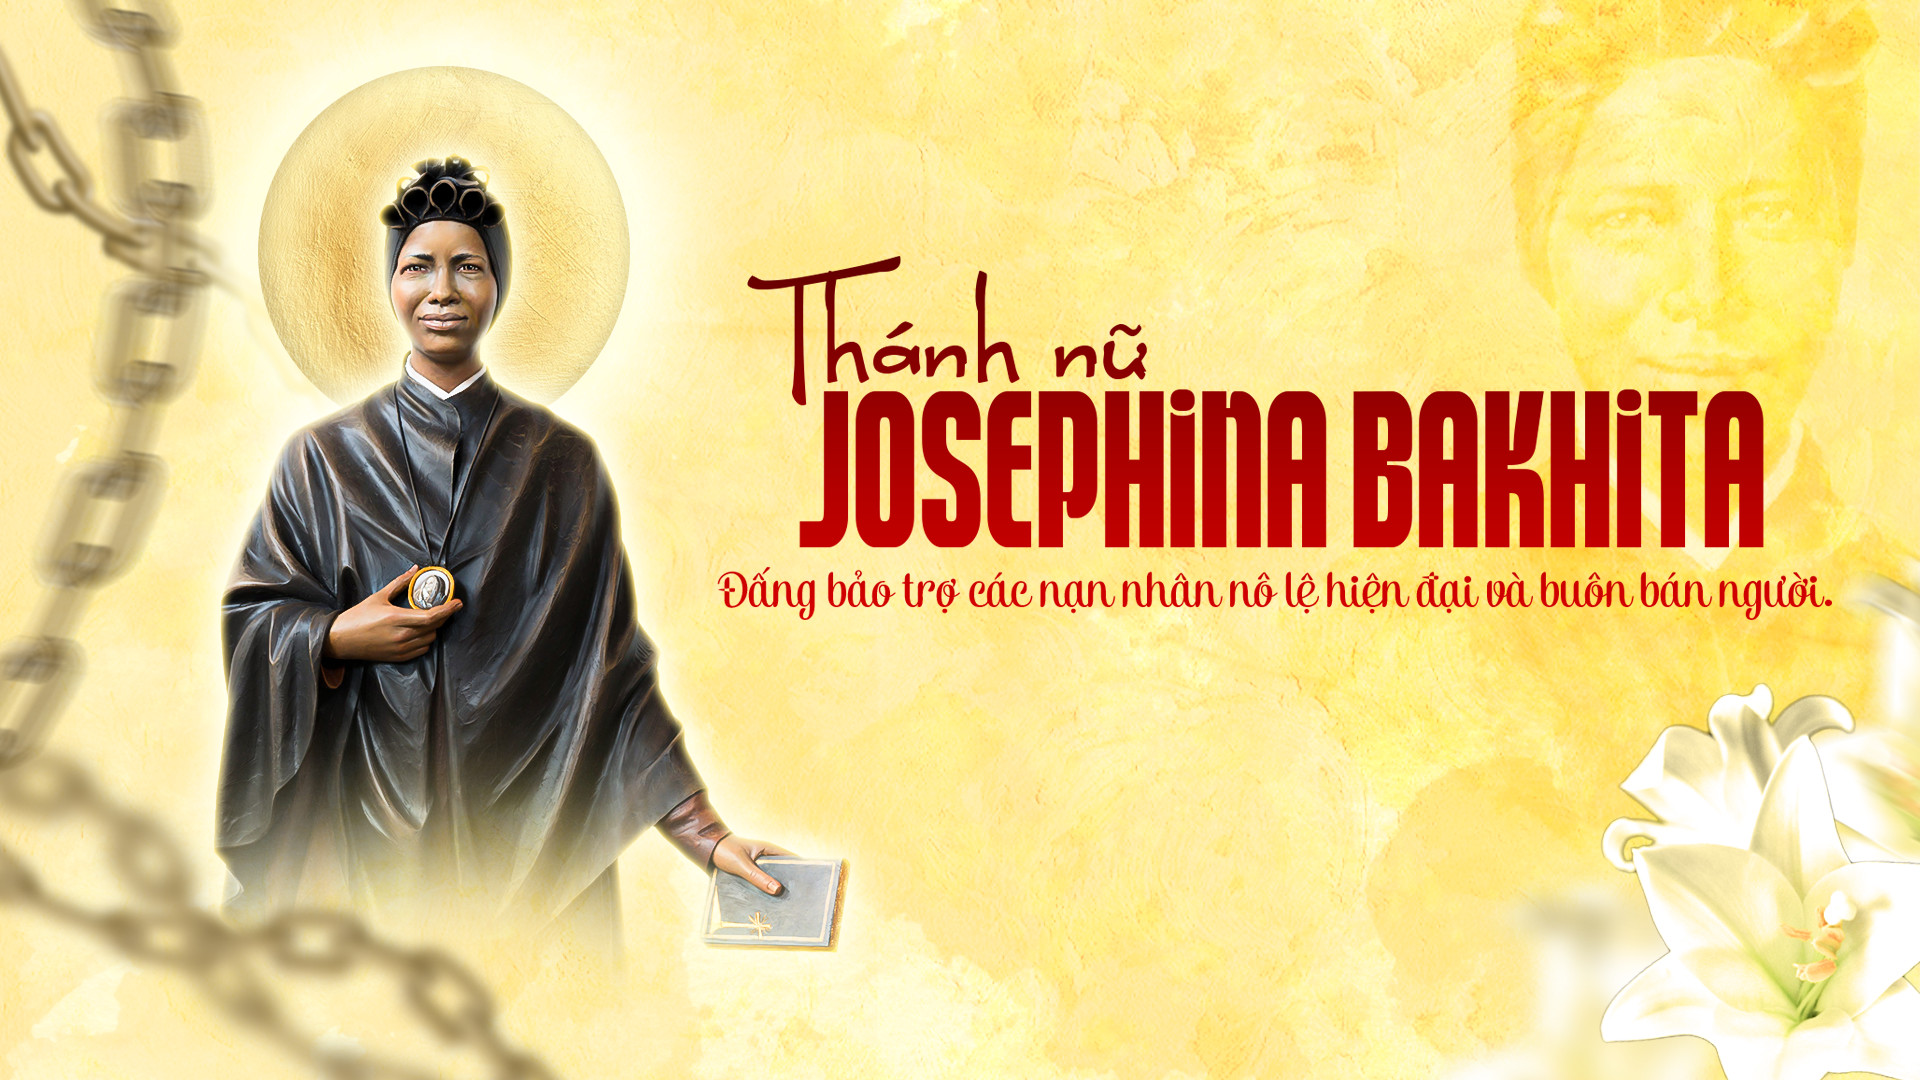 Caritas Việt Nam: Thánh Josephine Bakhita - Đấng Bảo Trợ Các Nạn Nhân Bị Buôn Người